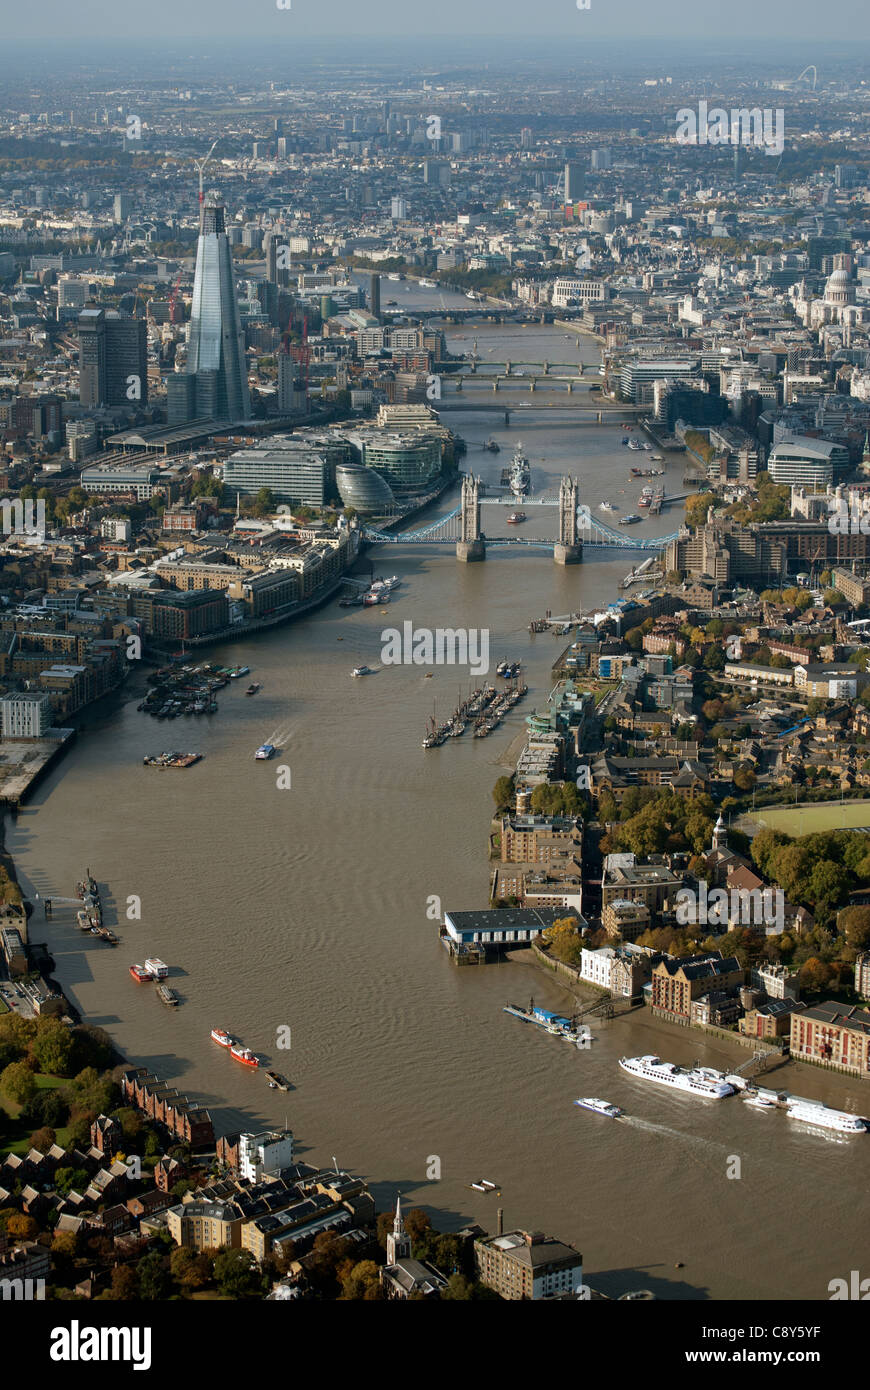 El río Támesis con el Tower Bridge de Londres Inglaterra desde el aire. Foto de stock